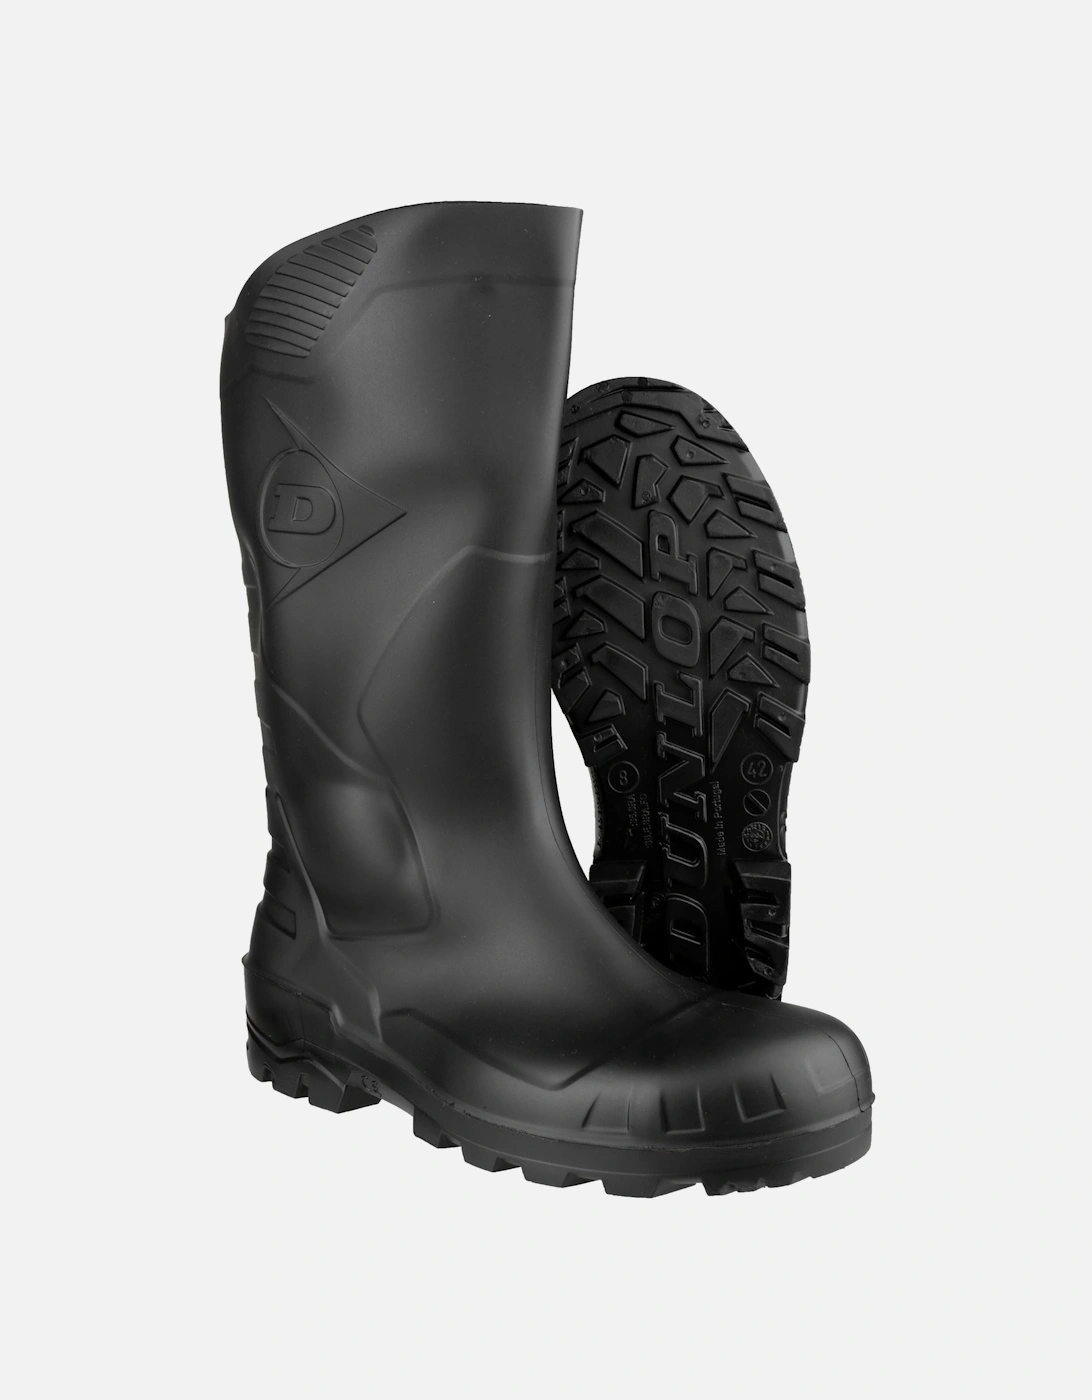 Devon Unisex Black Safety Wellington Boots